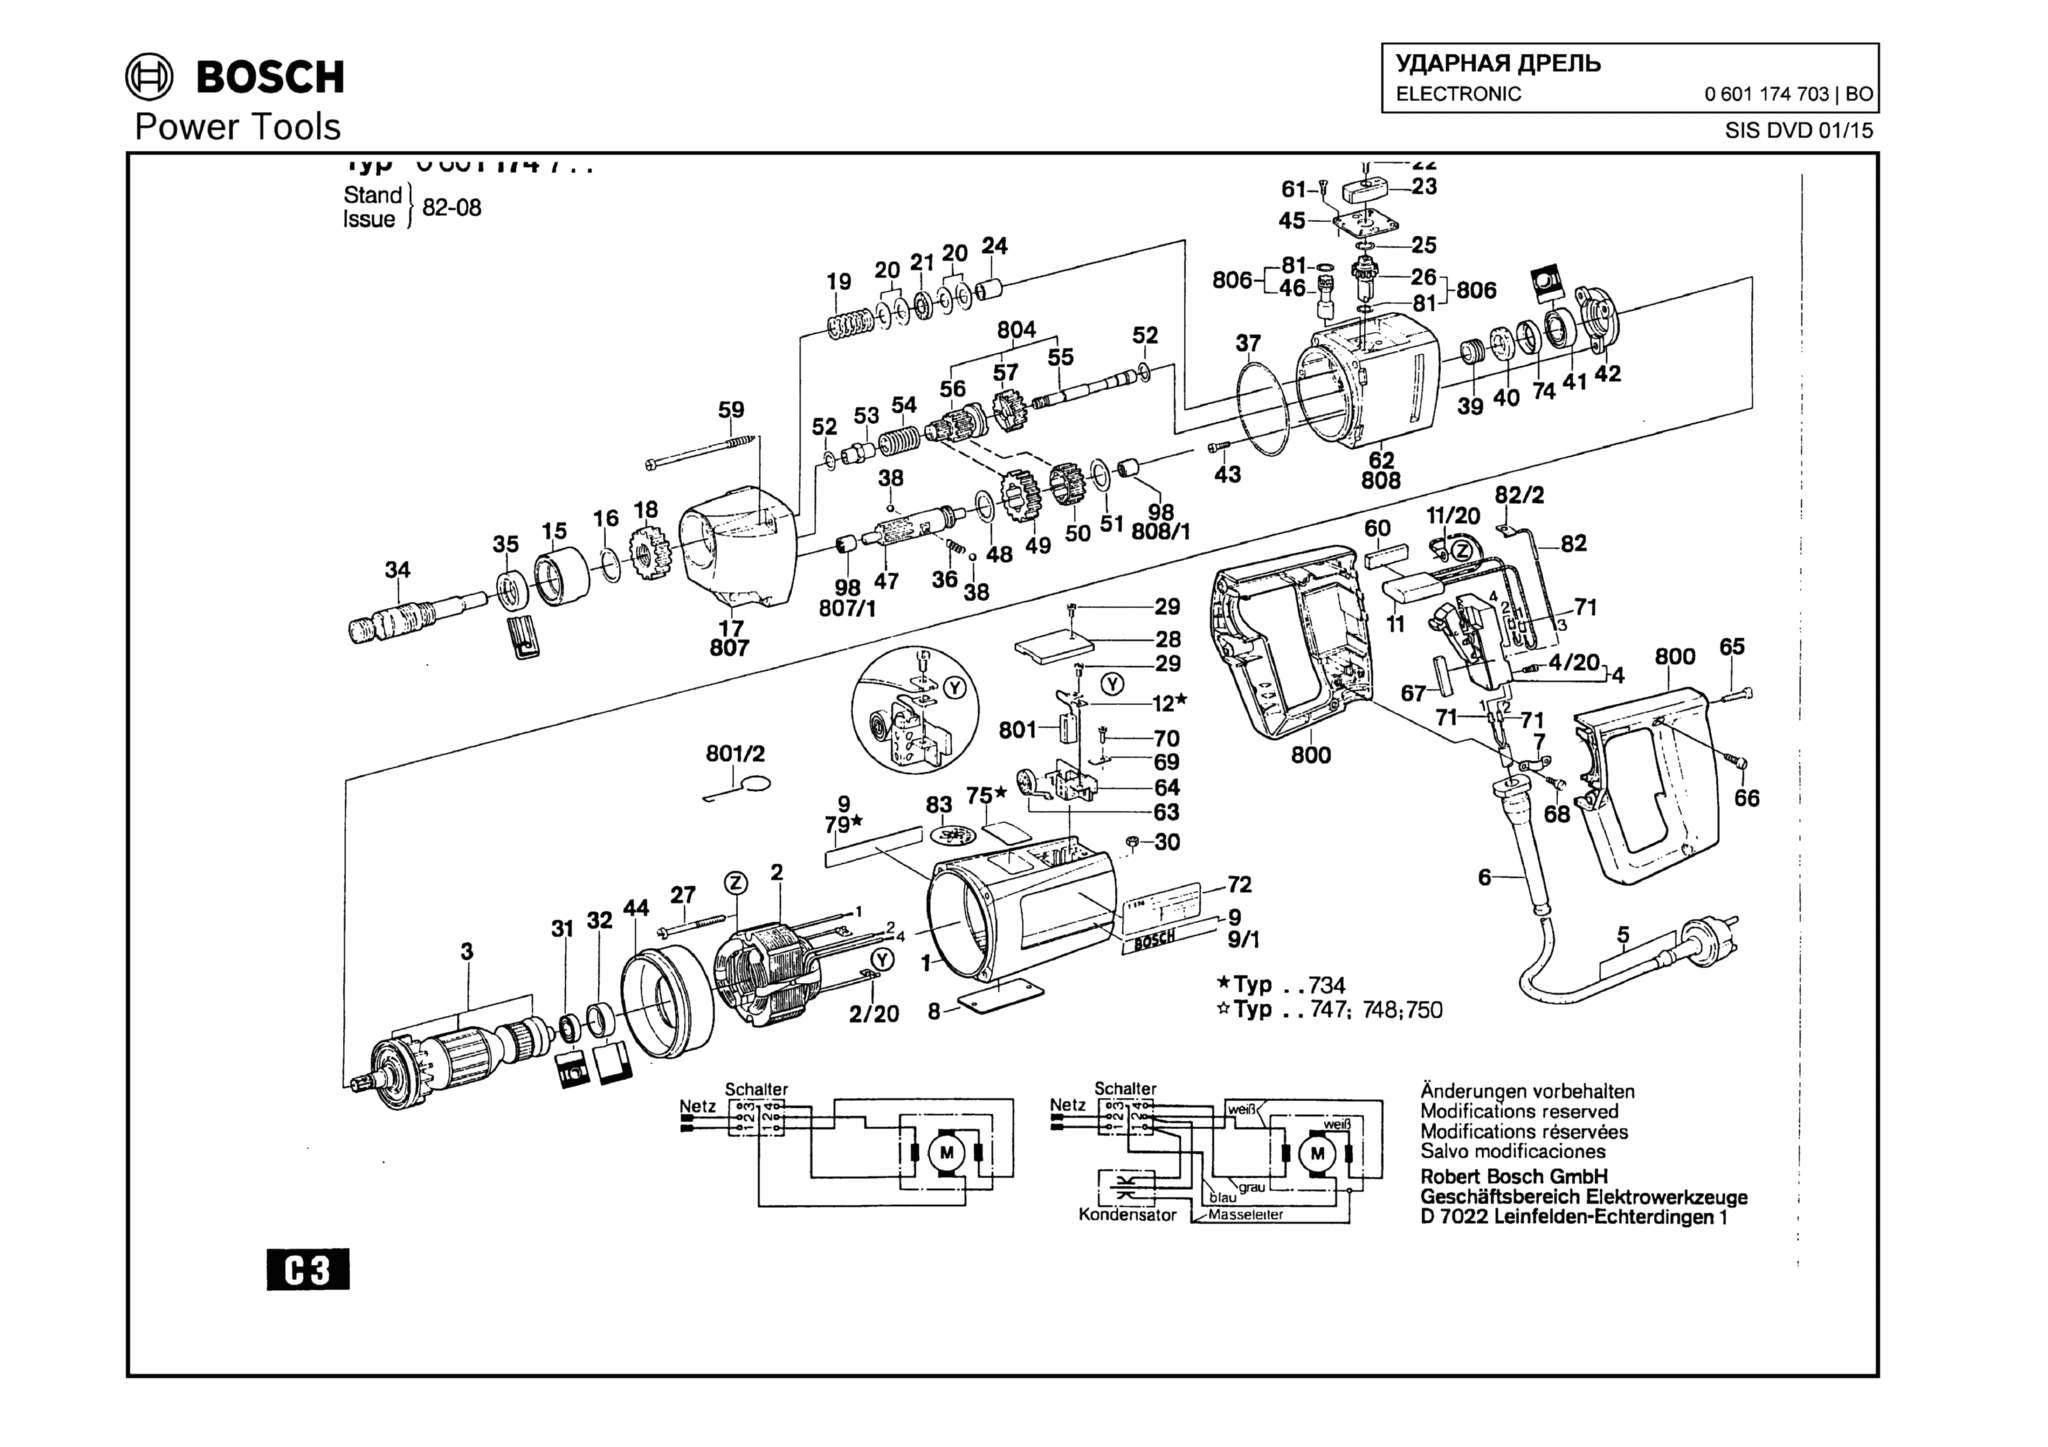 Запчасти, схема и деталировка Bosch ELECTRONIC (ТИП 0601174703)